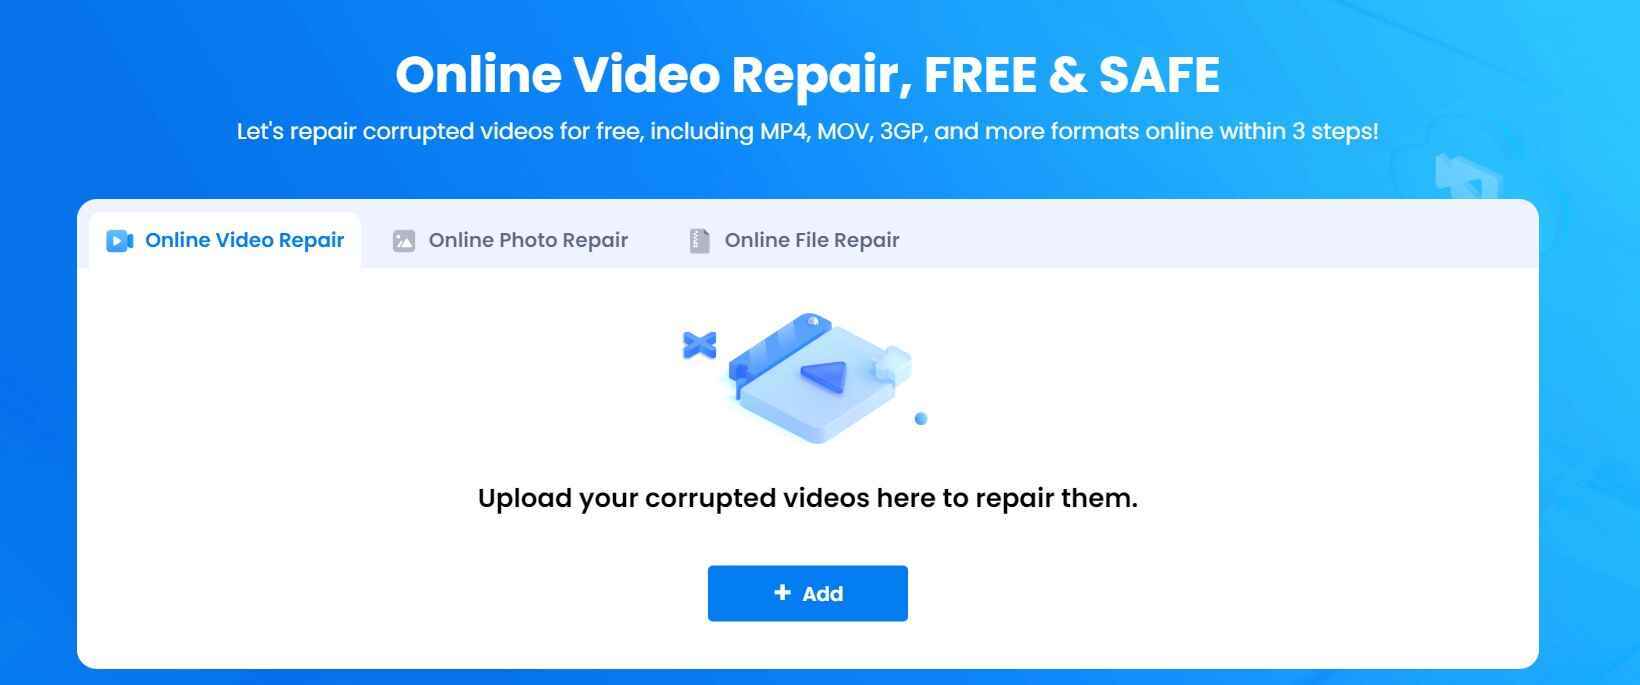 wondershare online video repair tool